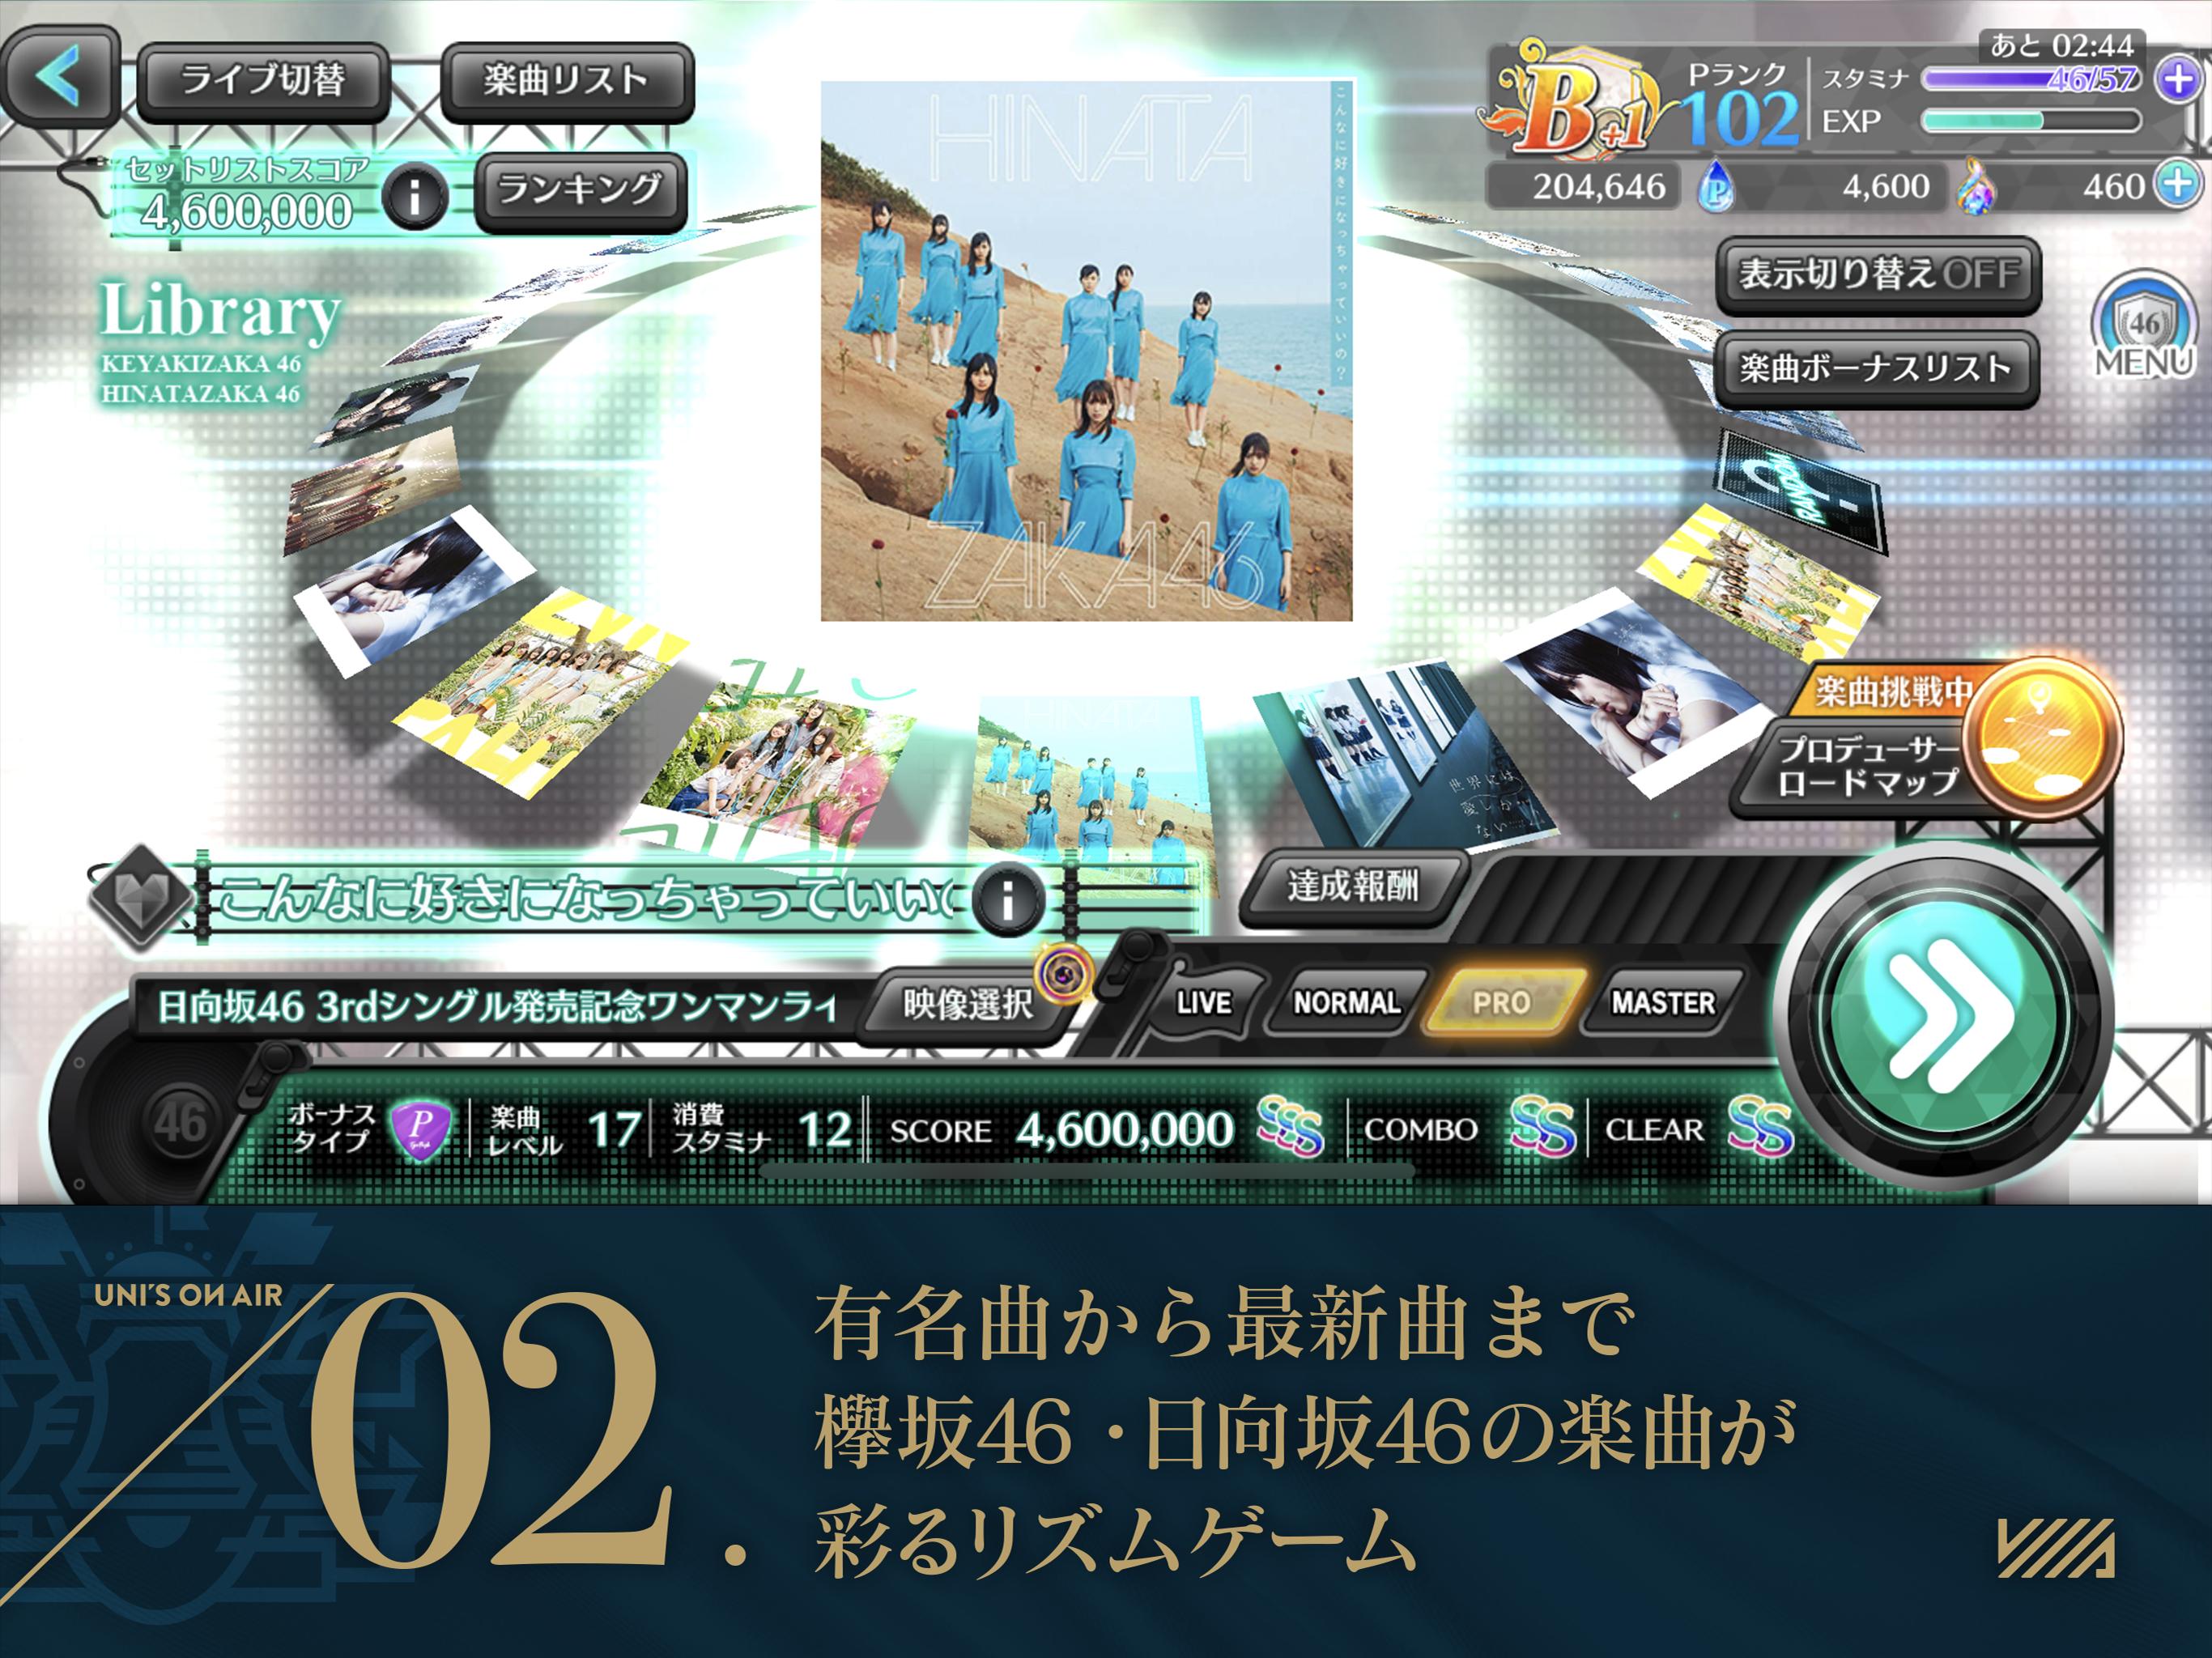 欅坂46・日向坂46 UNI'S ON AIR 2.0.0 Screenshot 14